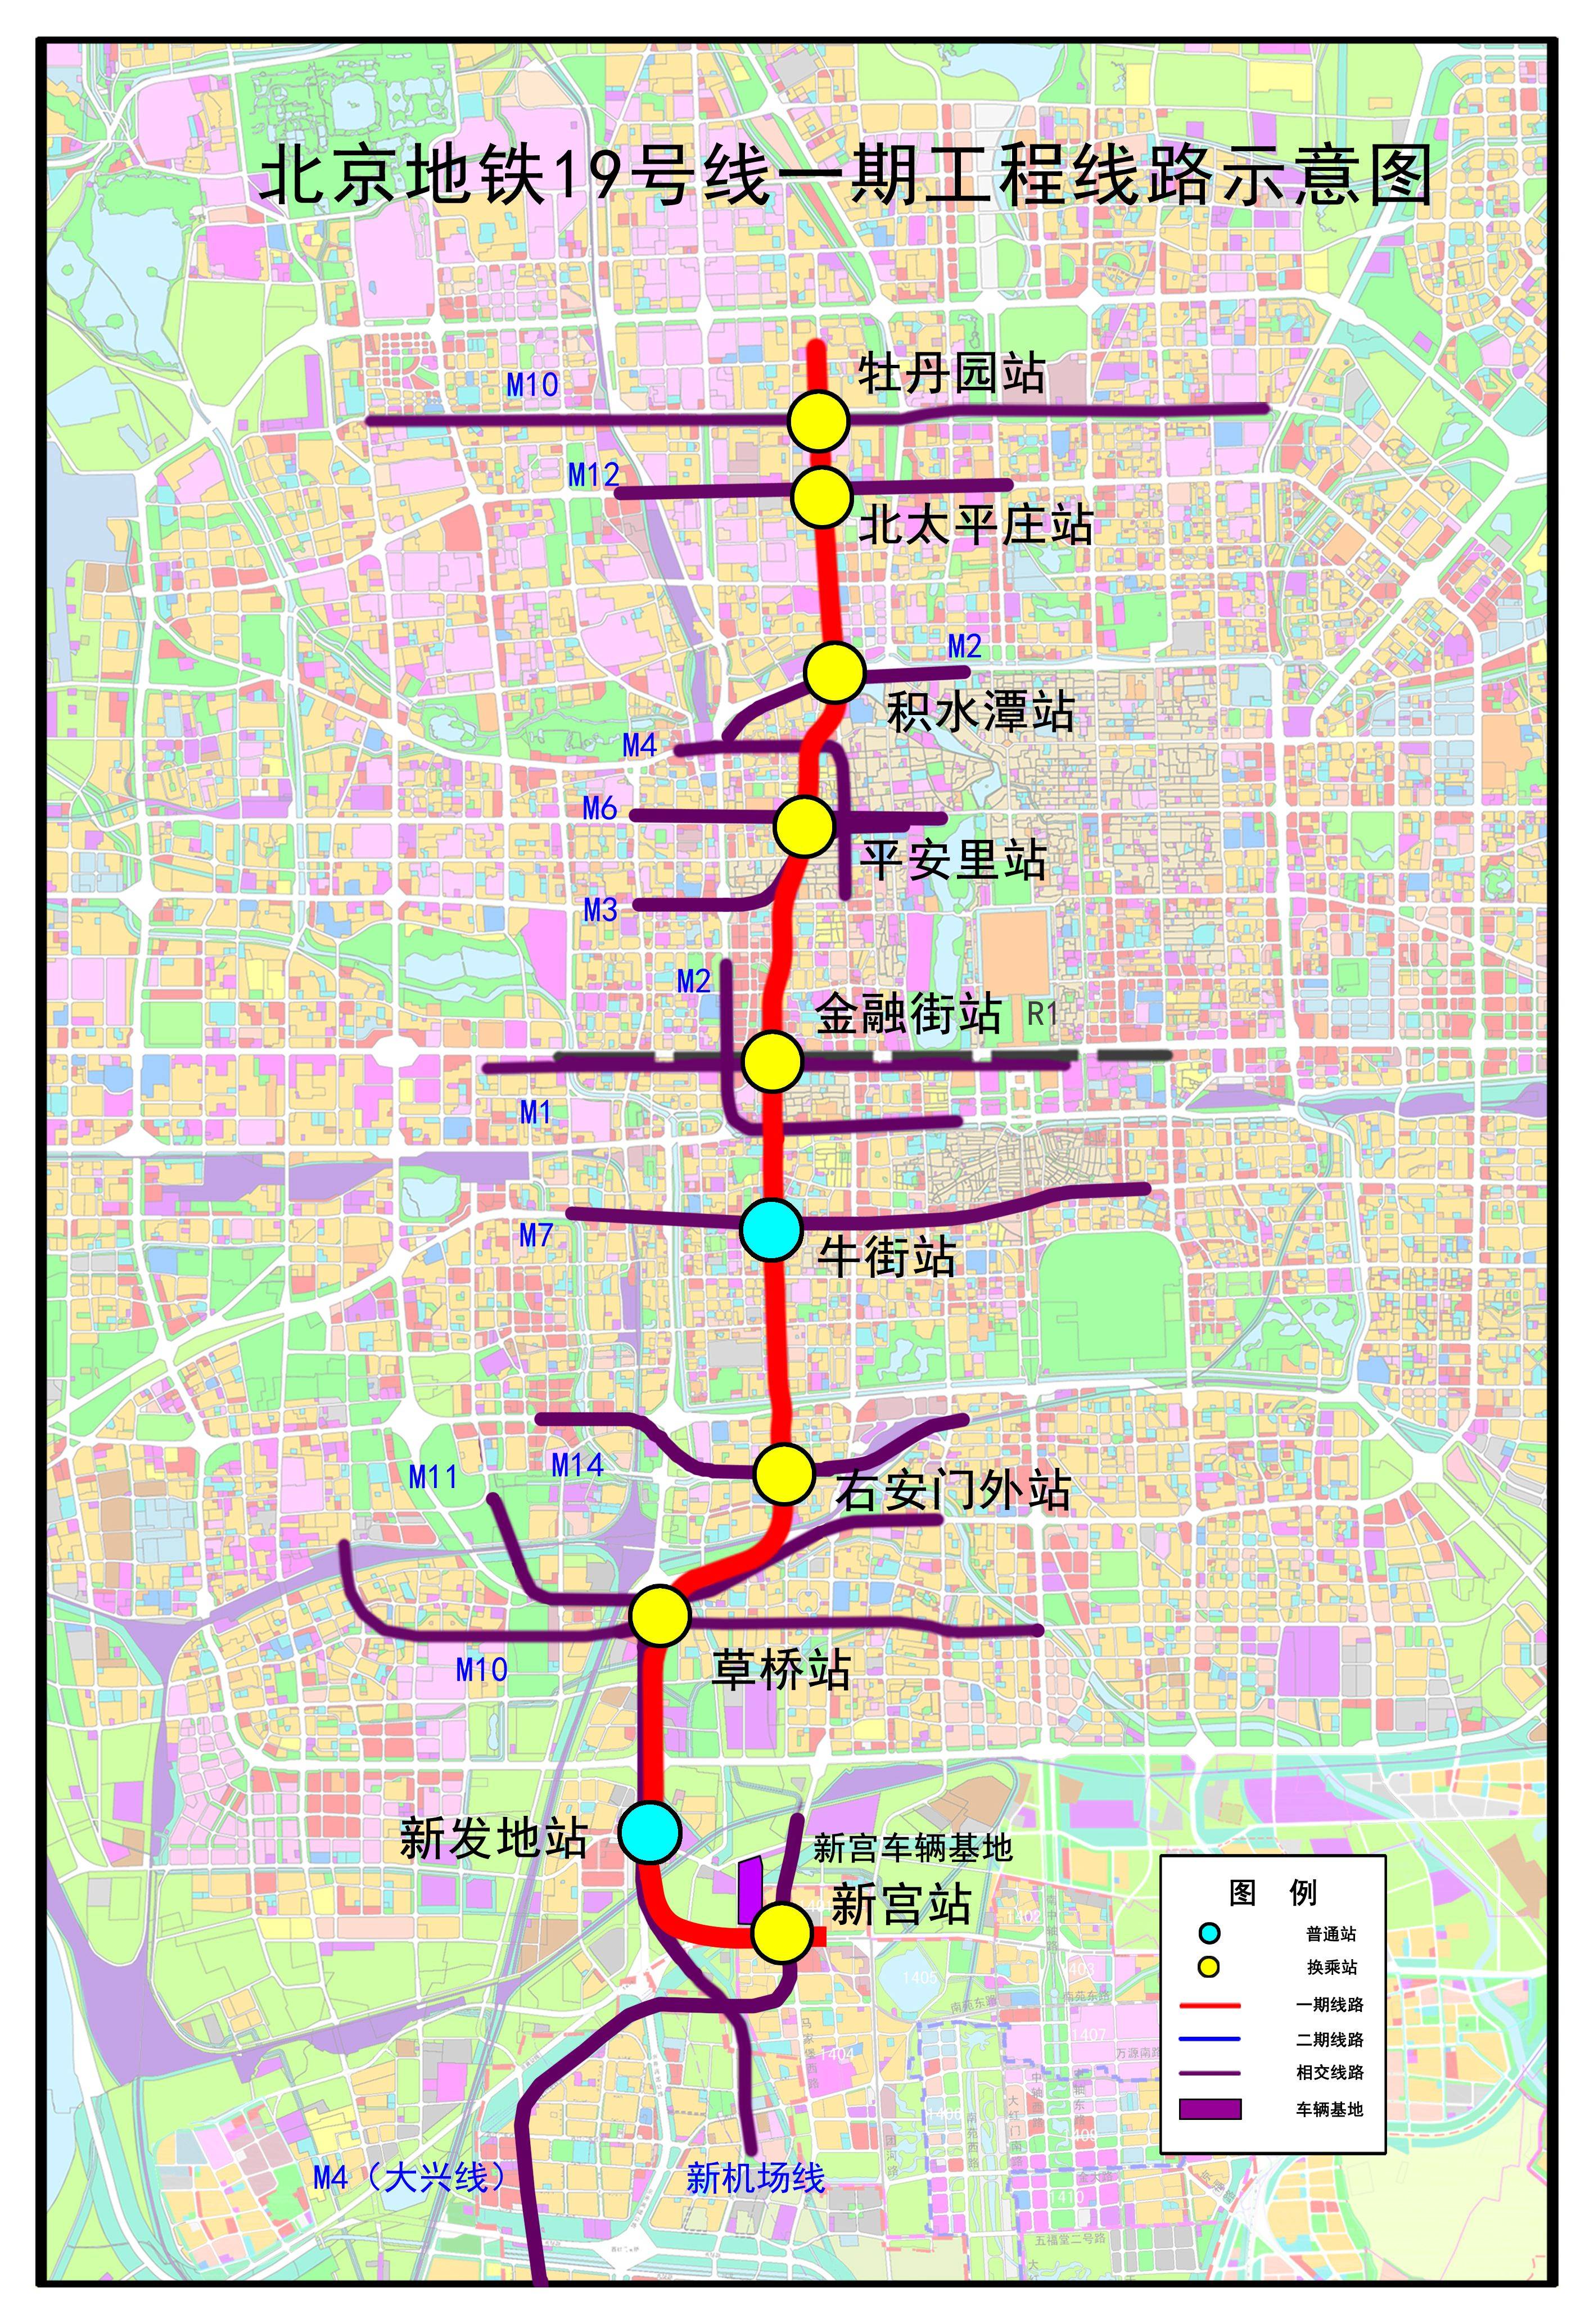 北京地铁17号线是一条贯穿中心城南北方向的交通干线,于2016年开工